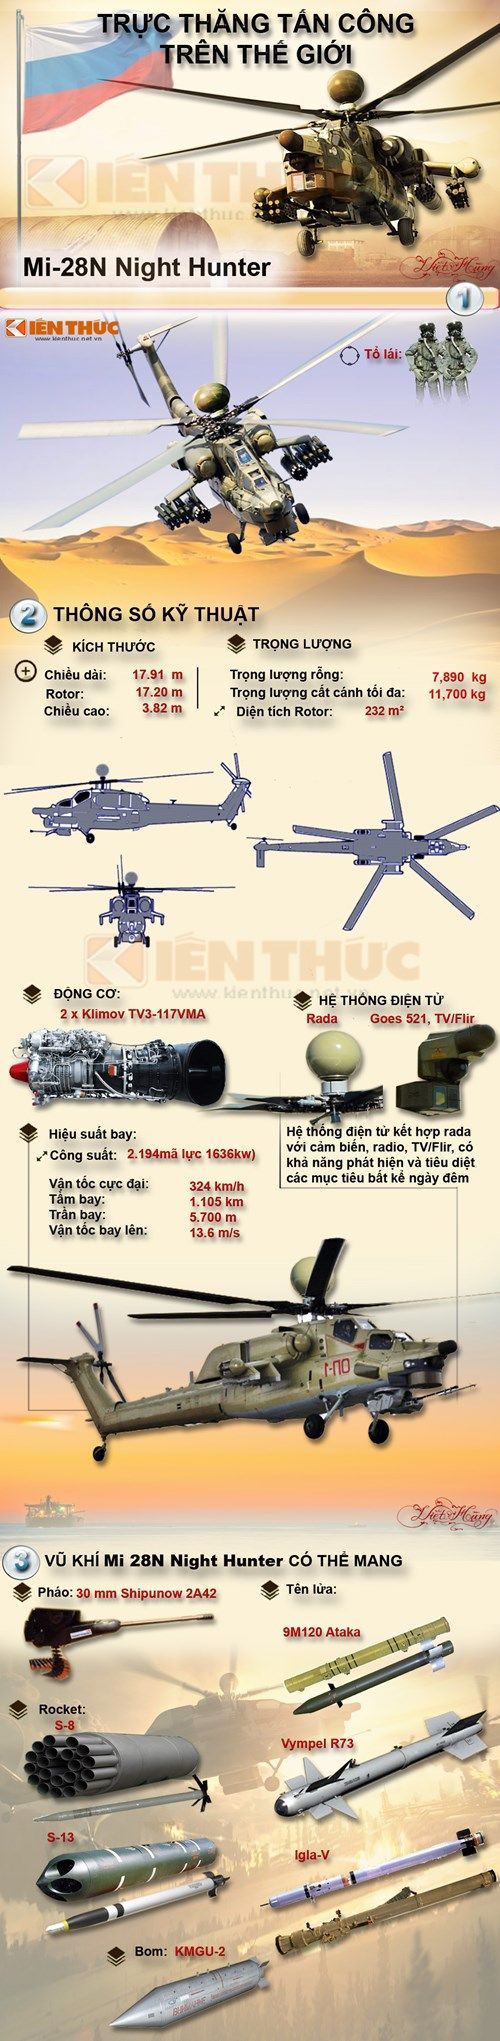 Drone Infographics : Infographic trực thăng tấn công Mi-28N của Nga